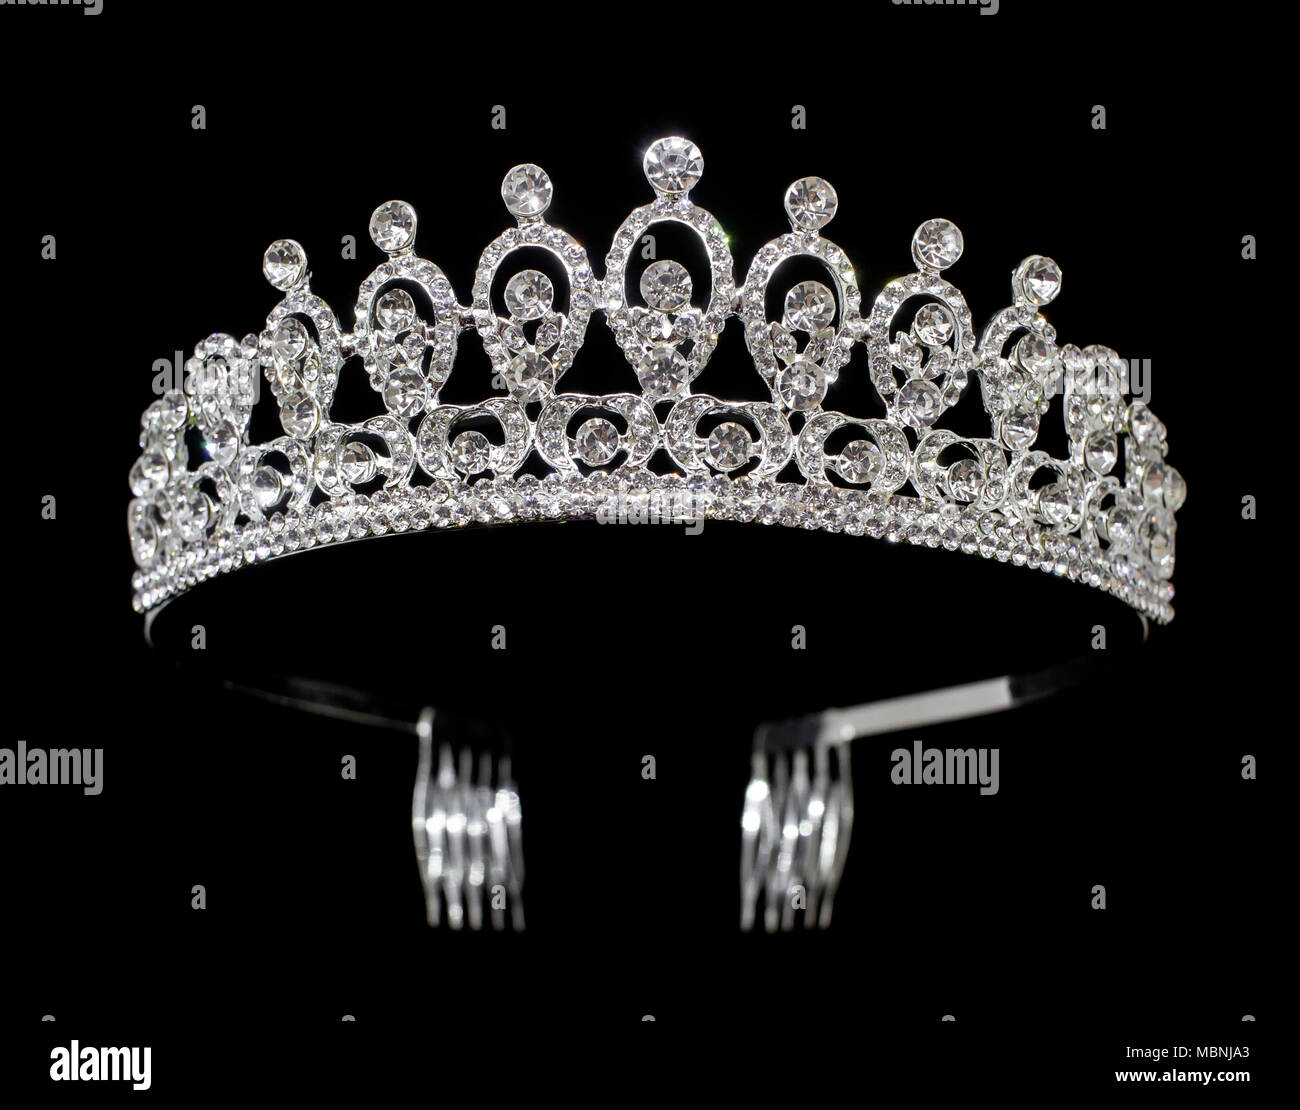 https://c8.alamy.com/compde/mbnja3/tiara-diadem-silber-mit-edelsteinen-und-diamanten-auf-schwarzem-hintergrund-mbnja3.jpg